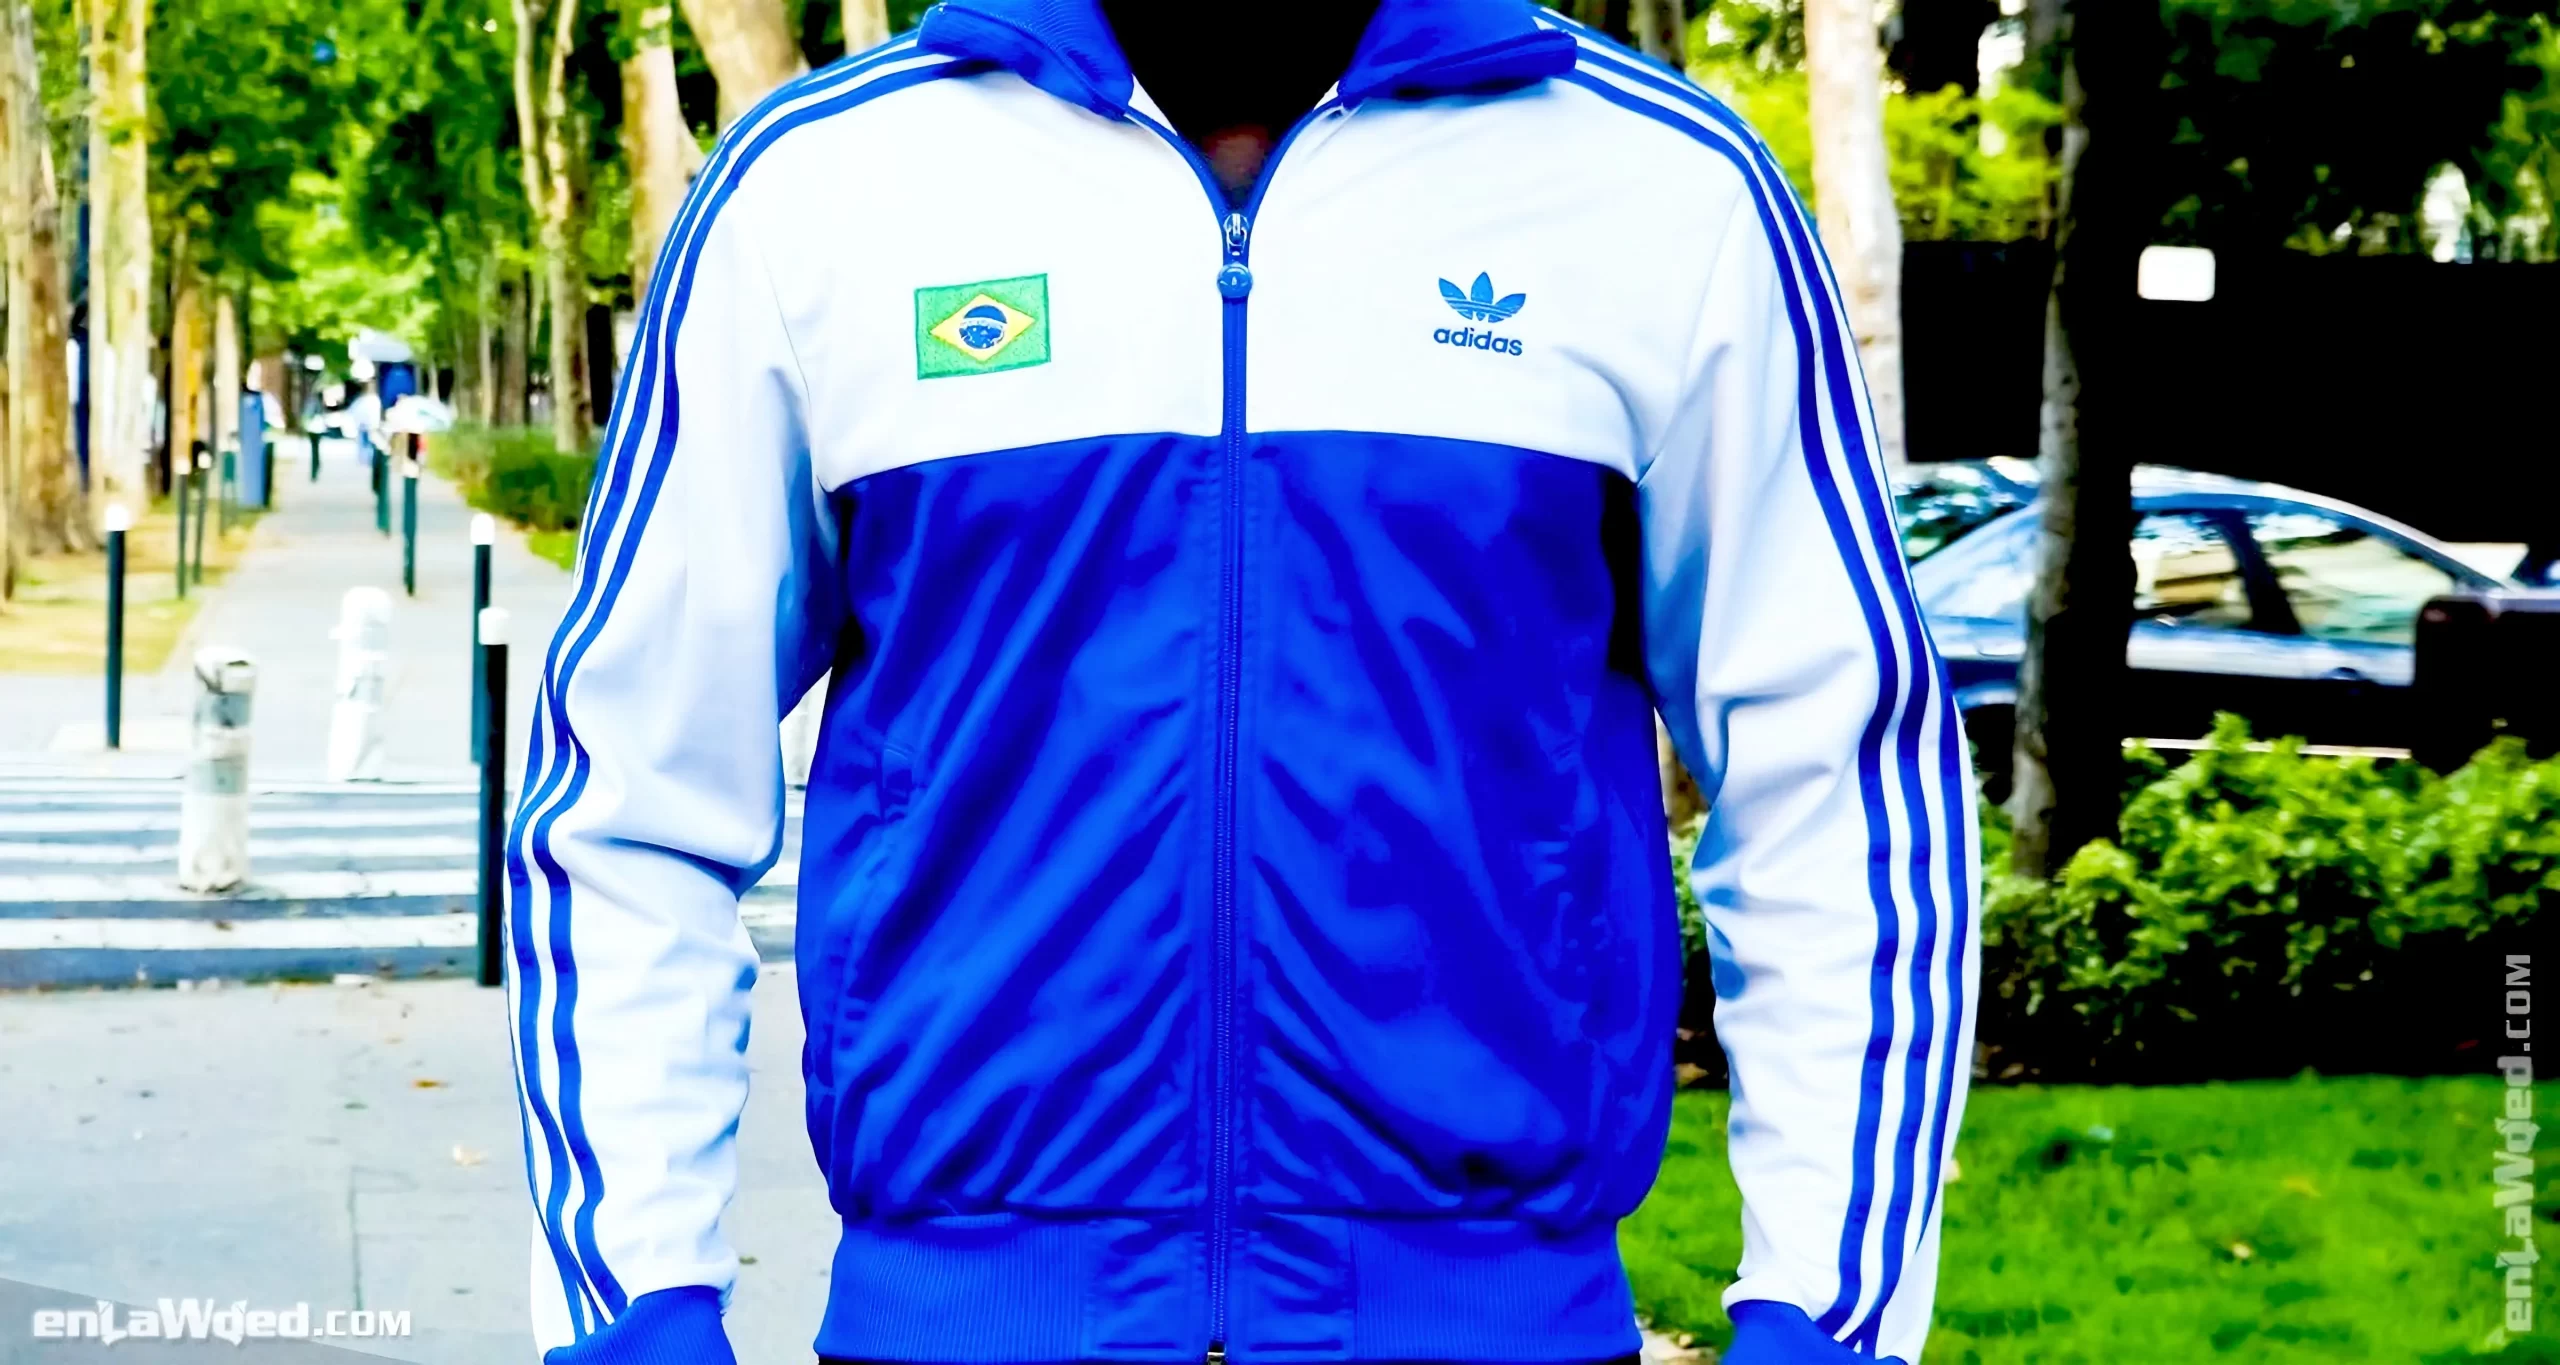 Men’s 2006 Rio de Janeiro TT-One by Adidas Originals: Carefree (EnLawded.com file #lmc5dms460u9r9m0o5v)